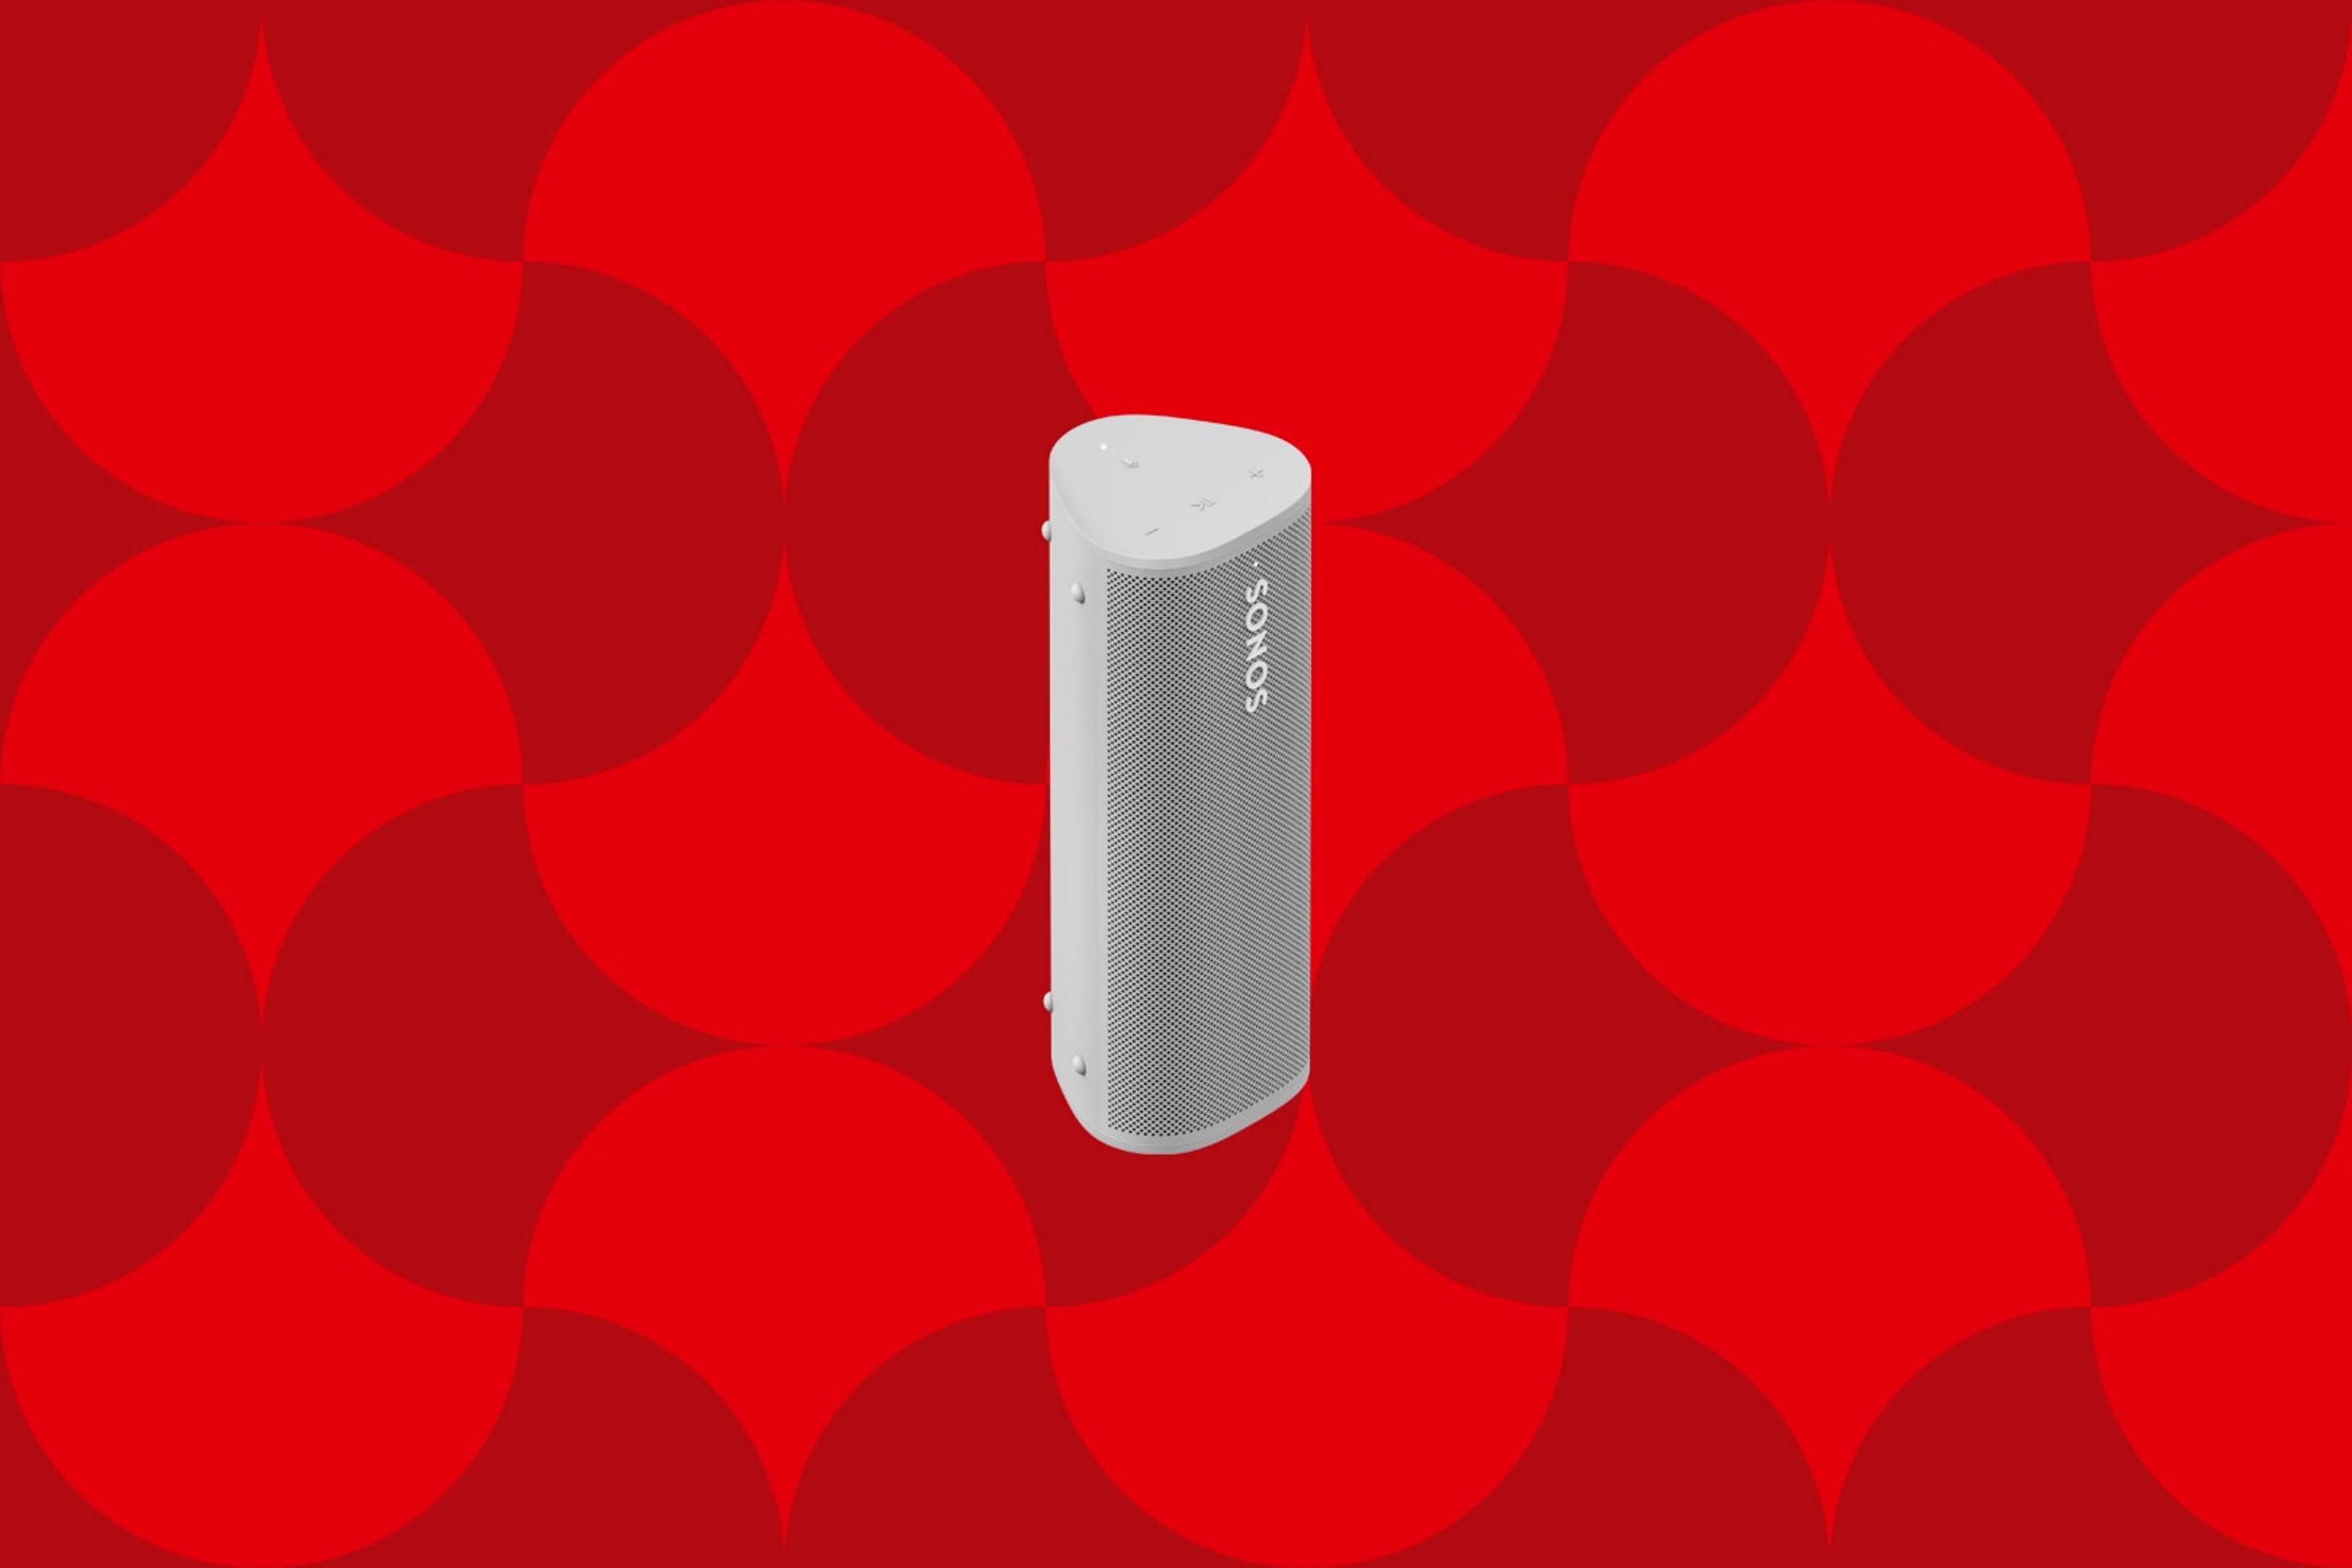 Immagine di uno speaker portatile Sonos Roam bianco su sfondo festivo con grafica rossa